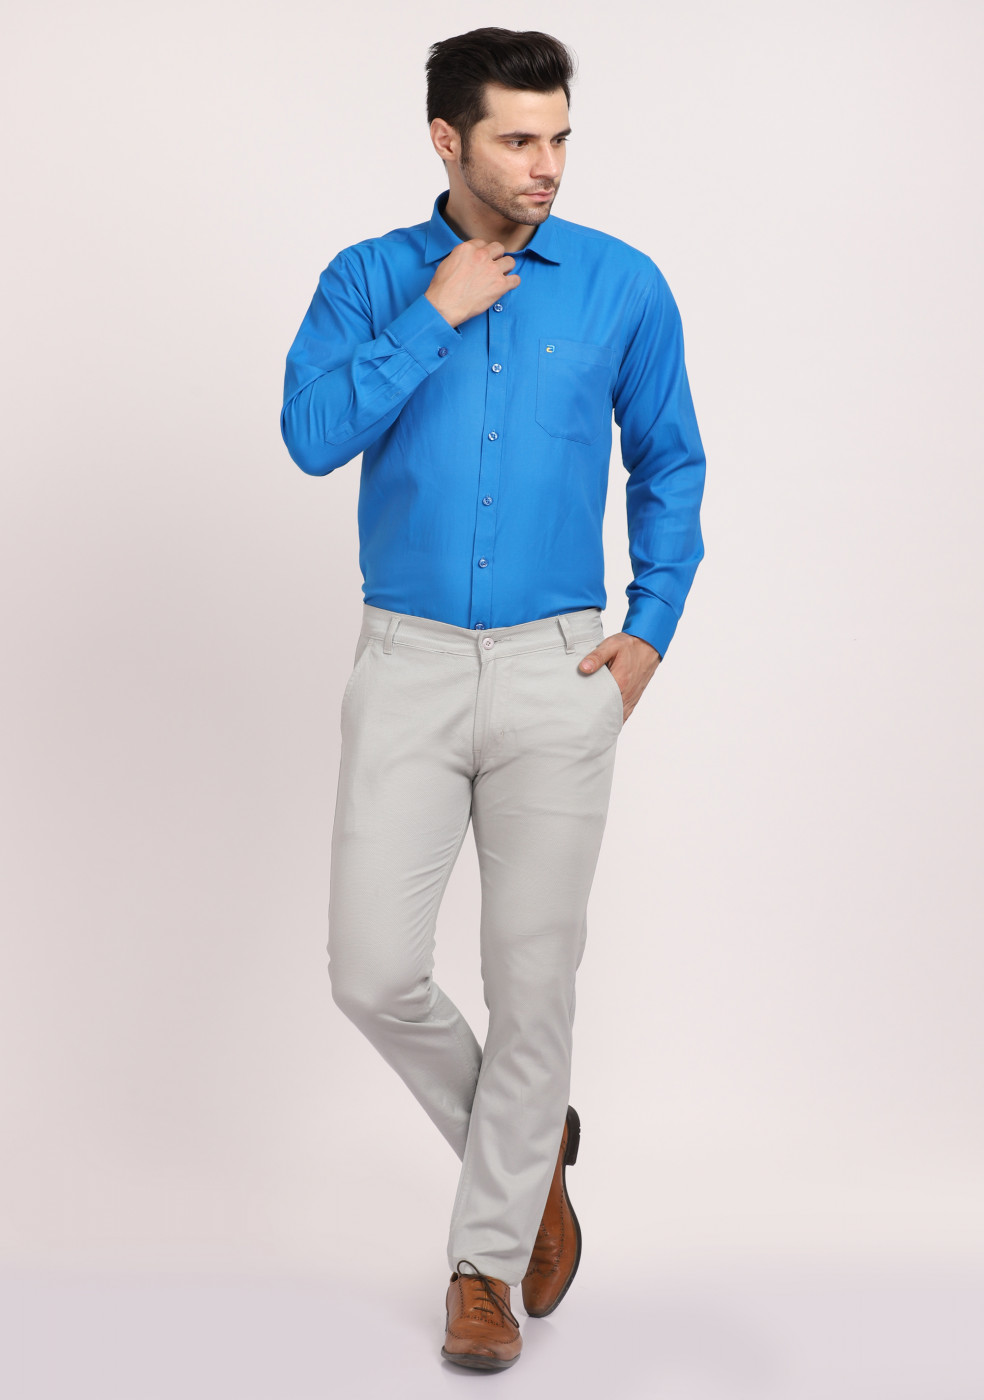 ASHTOM Light Blue Formal Cotton Trouser Regular Fit For Men